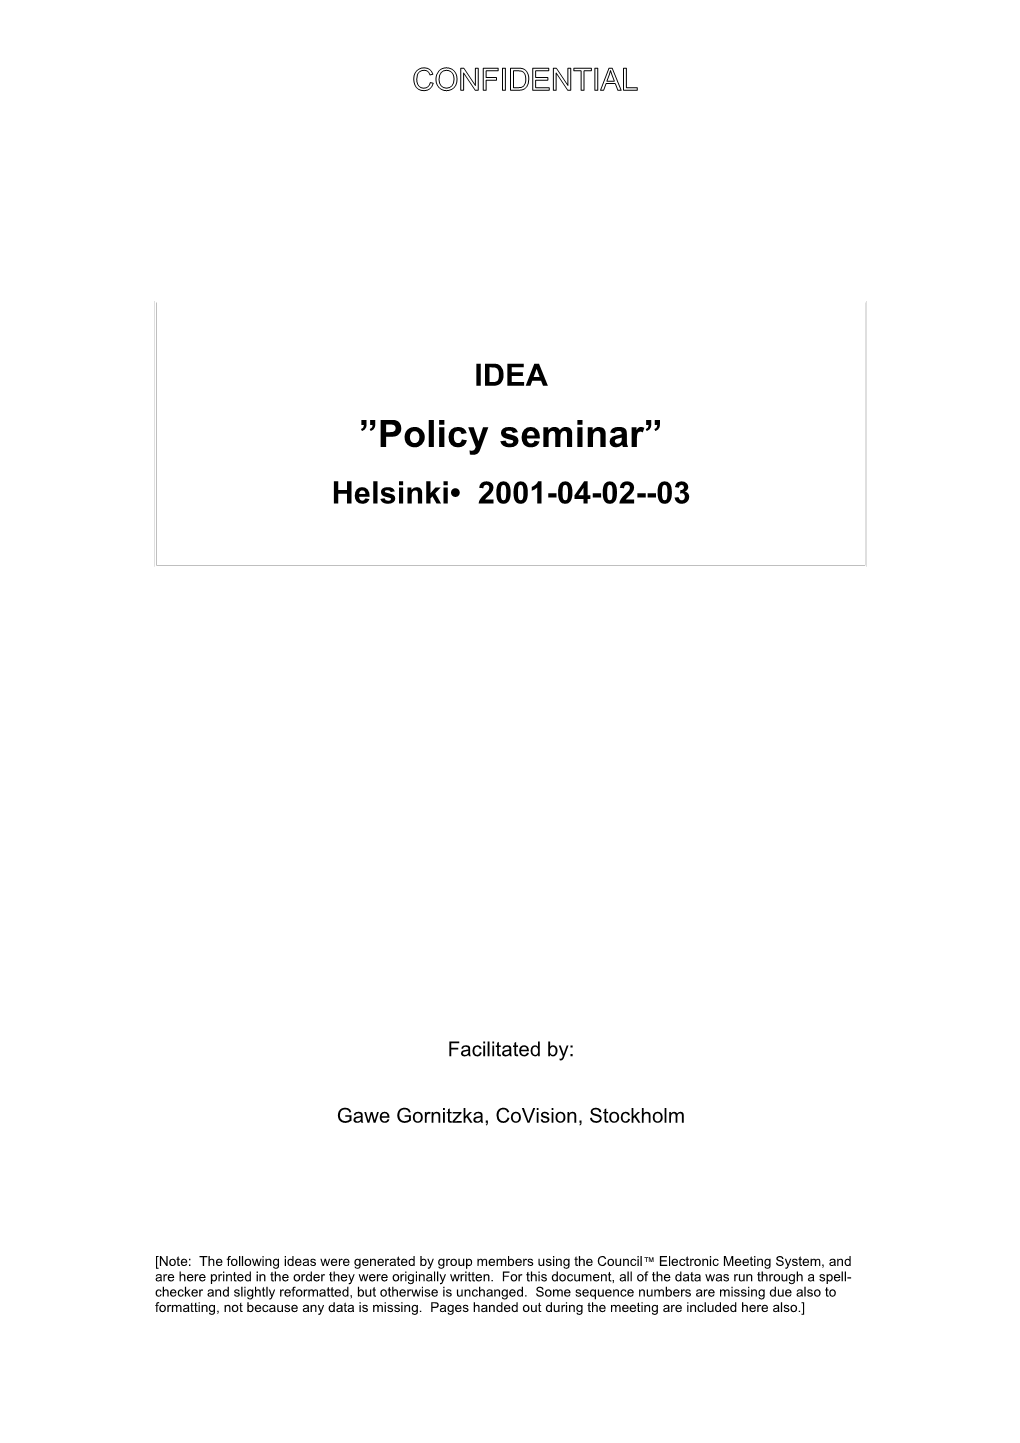 Policy Seminar